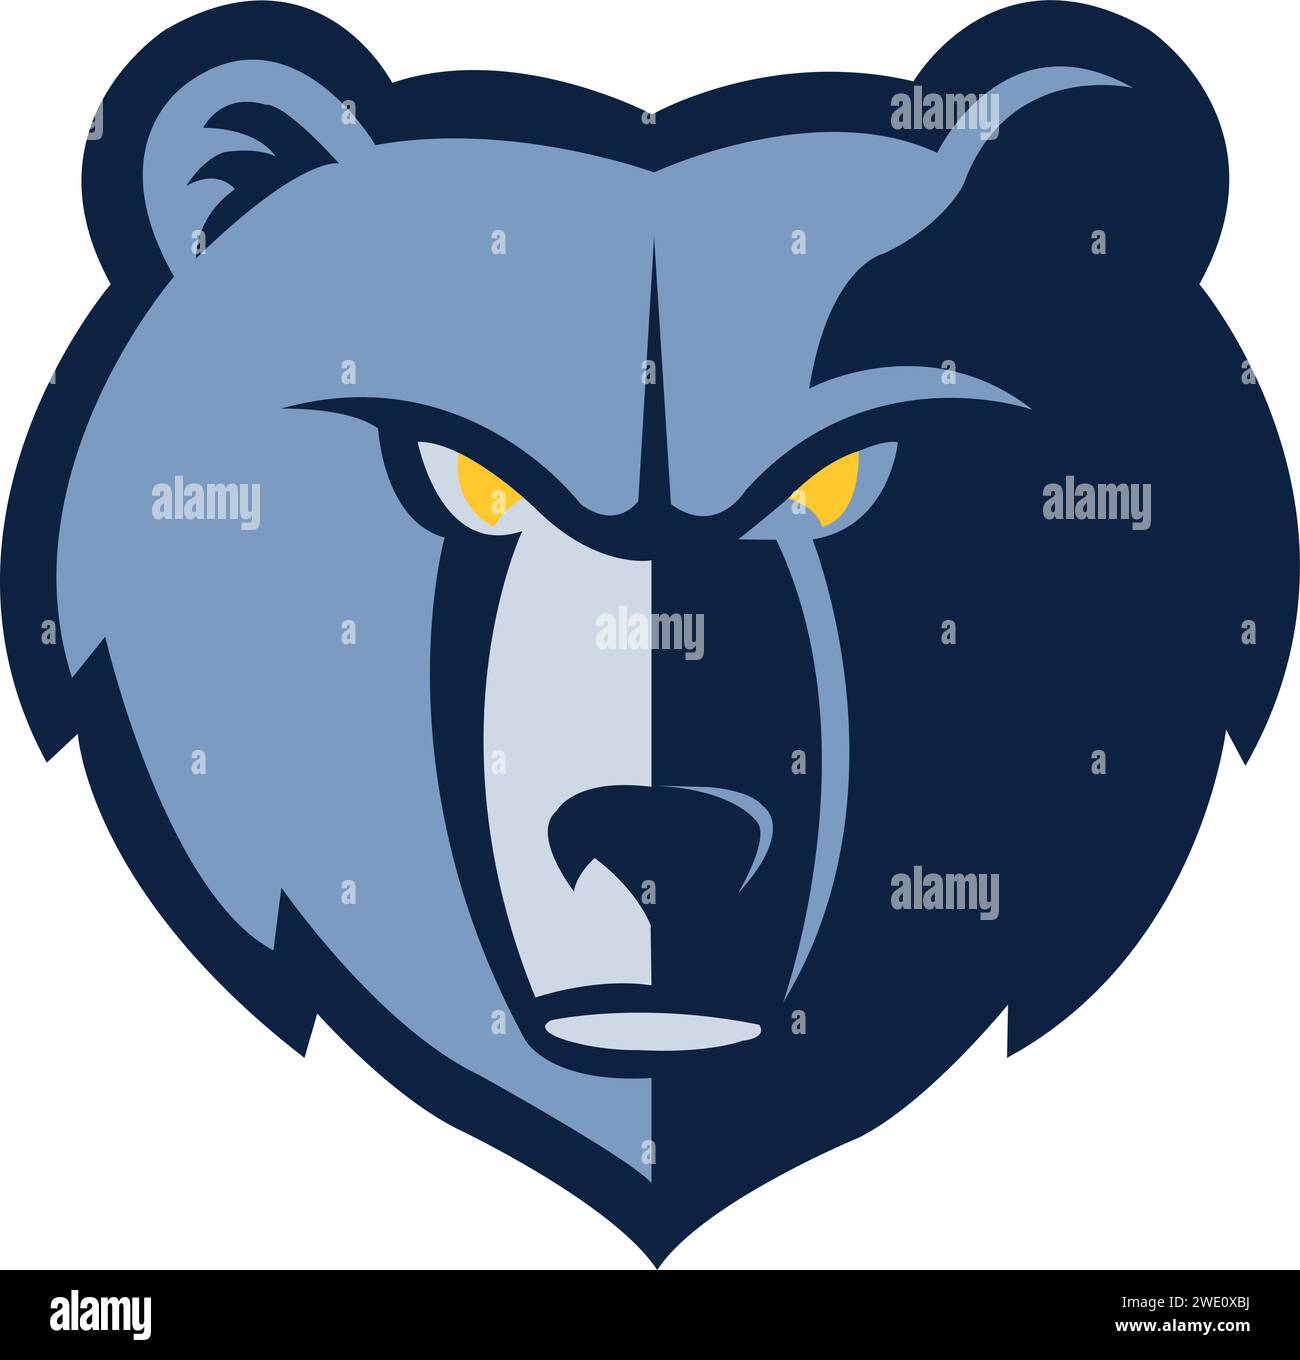 Le logo Memphis Grizzlies rugit avec fierté, incarnant l'esprit féroce de l'équipe sur le terrain et en dehors Illustration de Vecteur